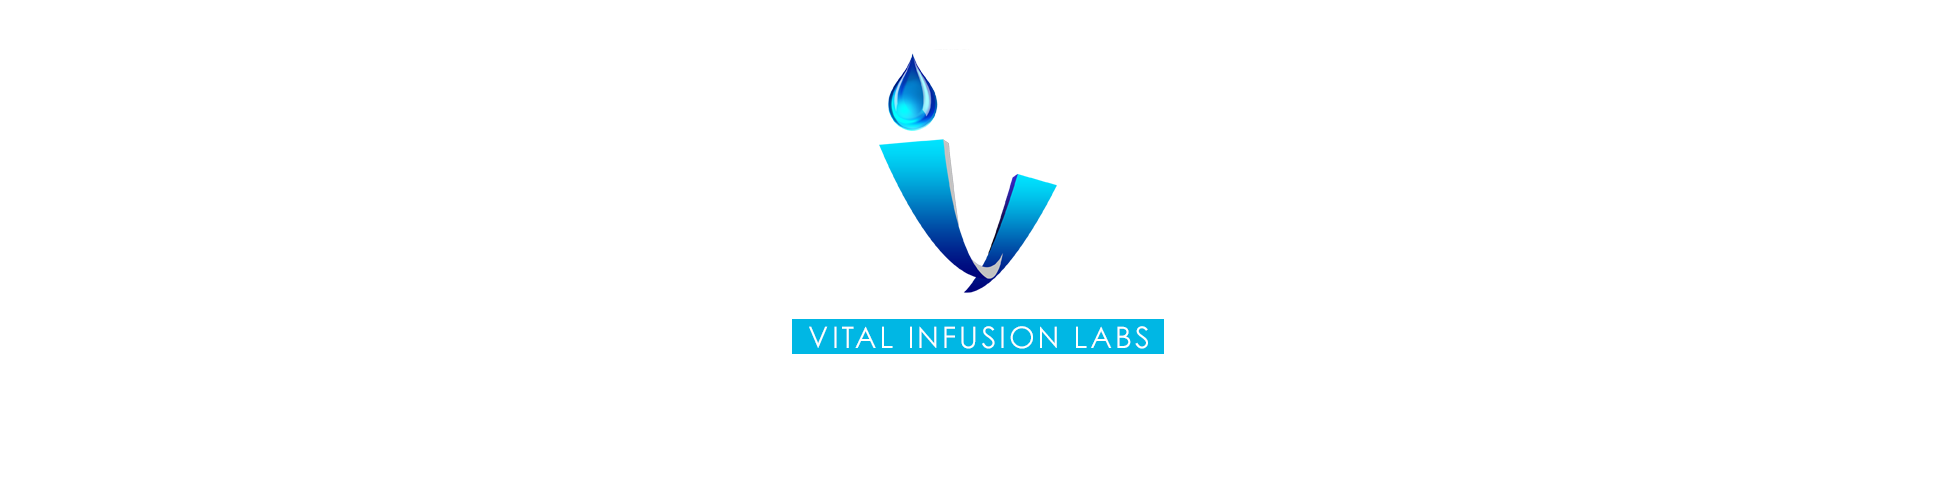 Dr Nicholas Kraetzer – Vital Infusion Labs